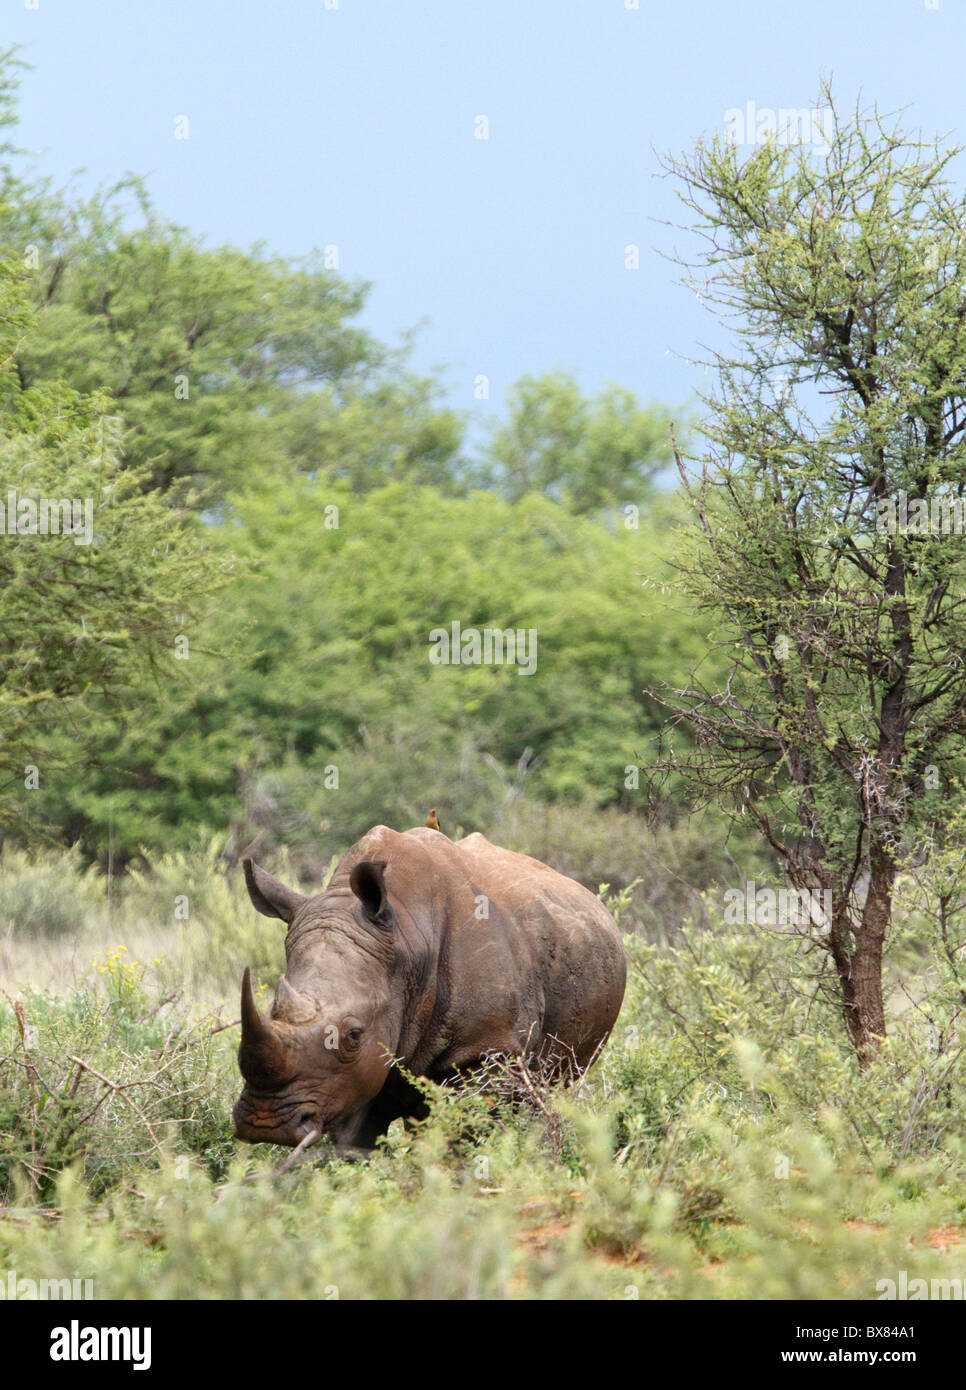 White or square-lipped rhinoceros (Ceratotherium simum) Stock Photo